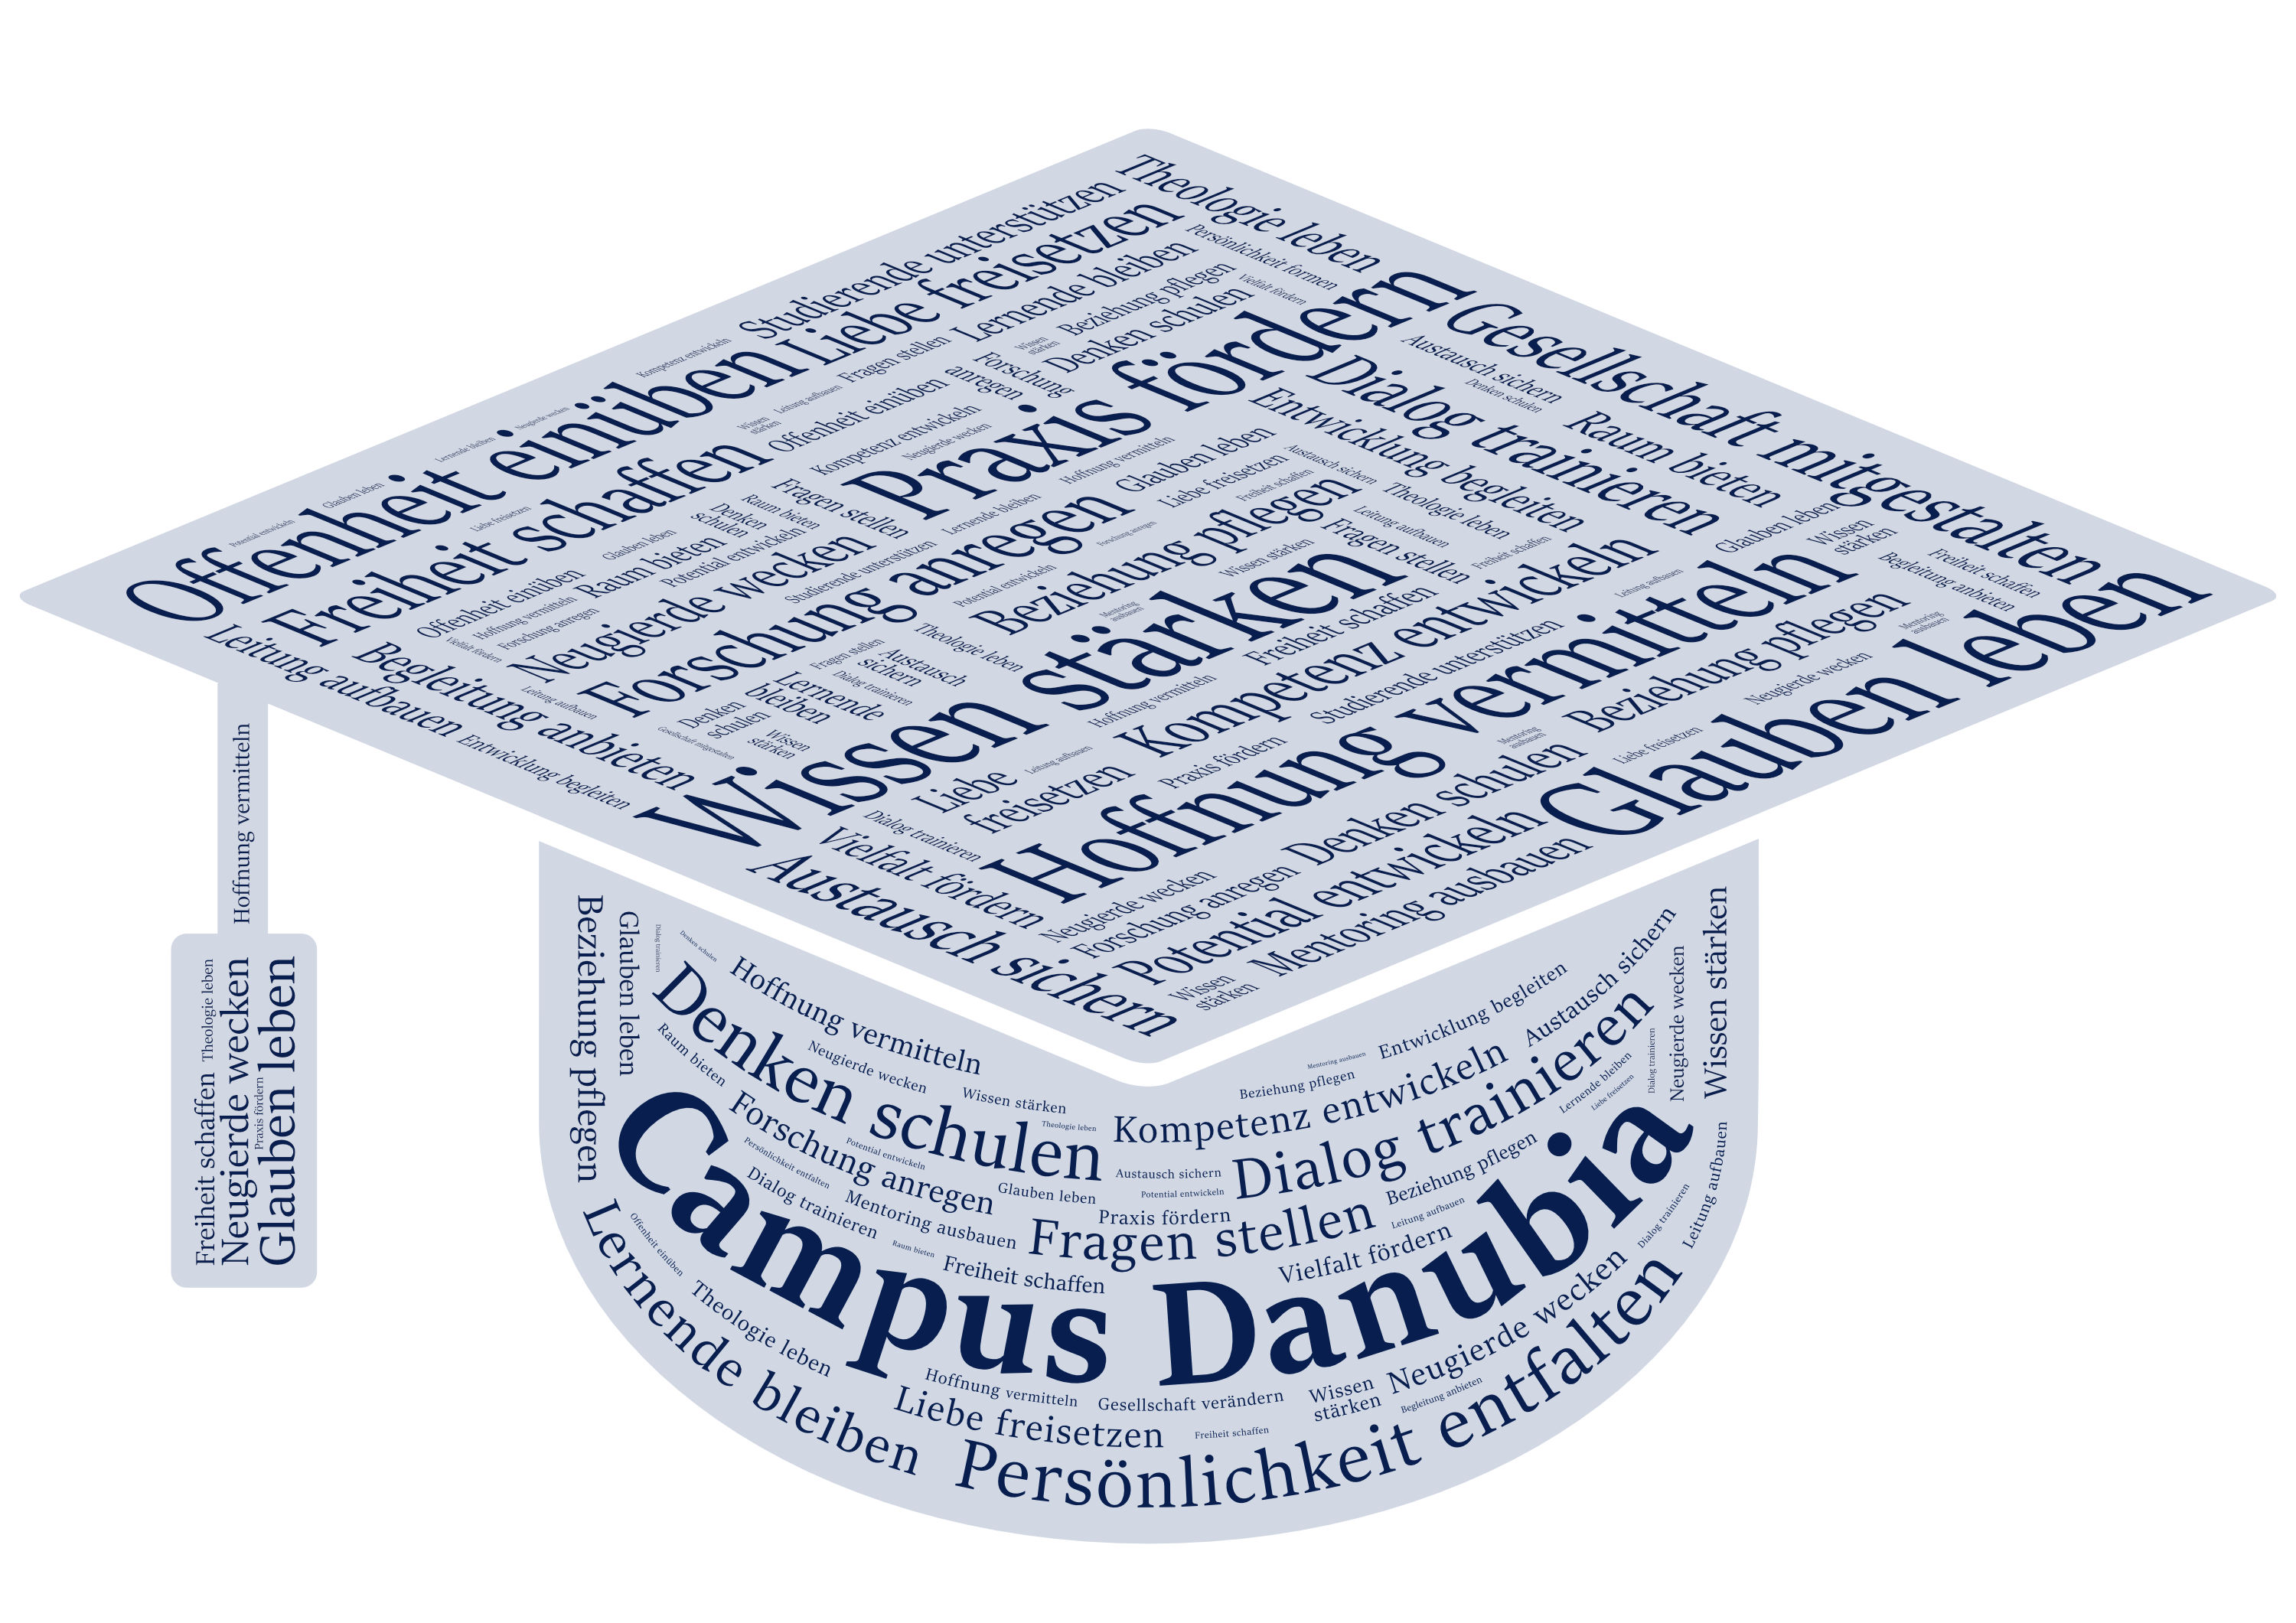 Schlagwortwolke Campus Danubia